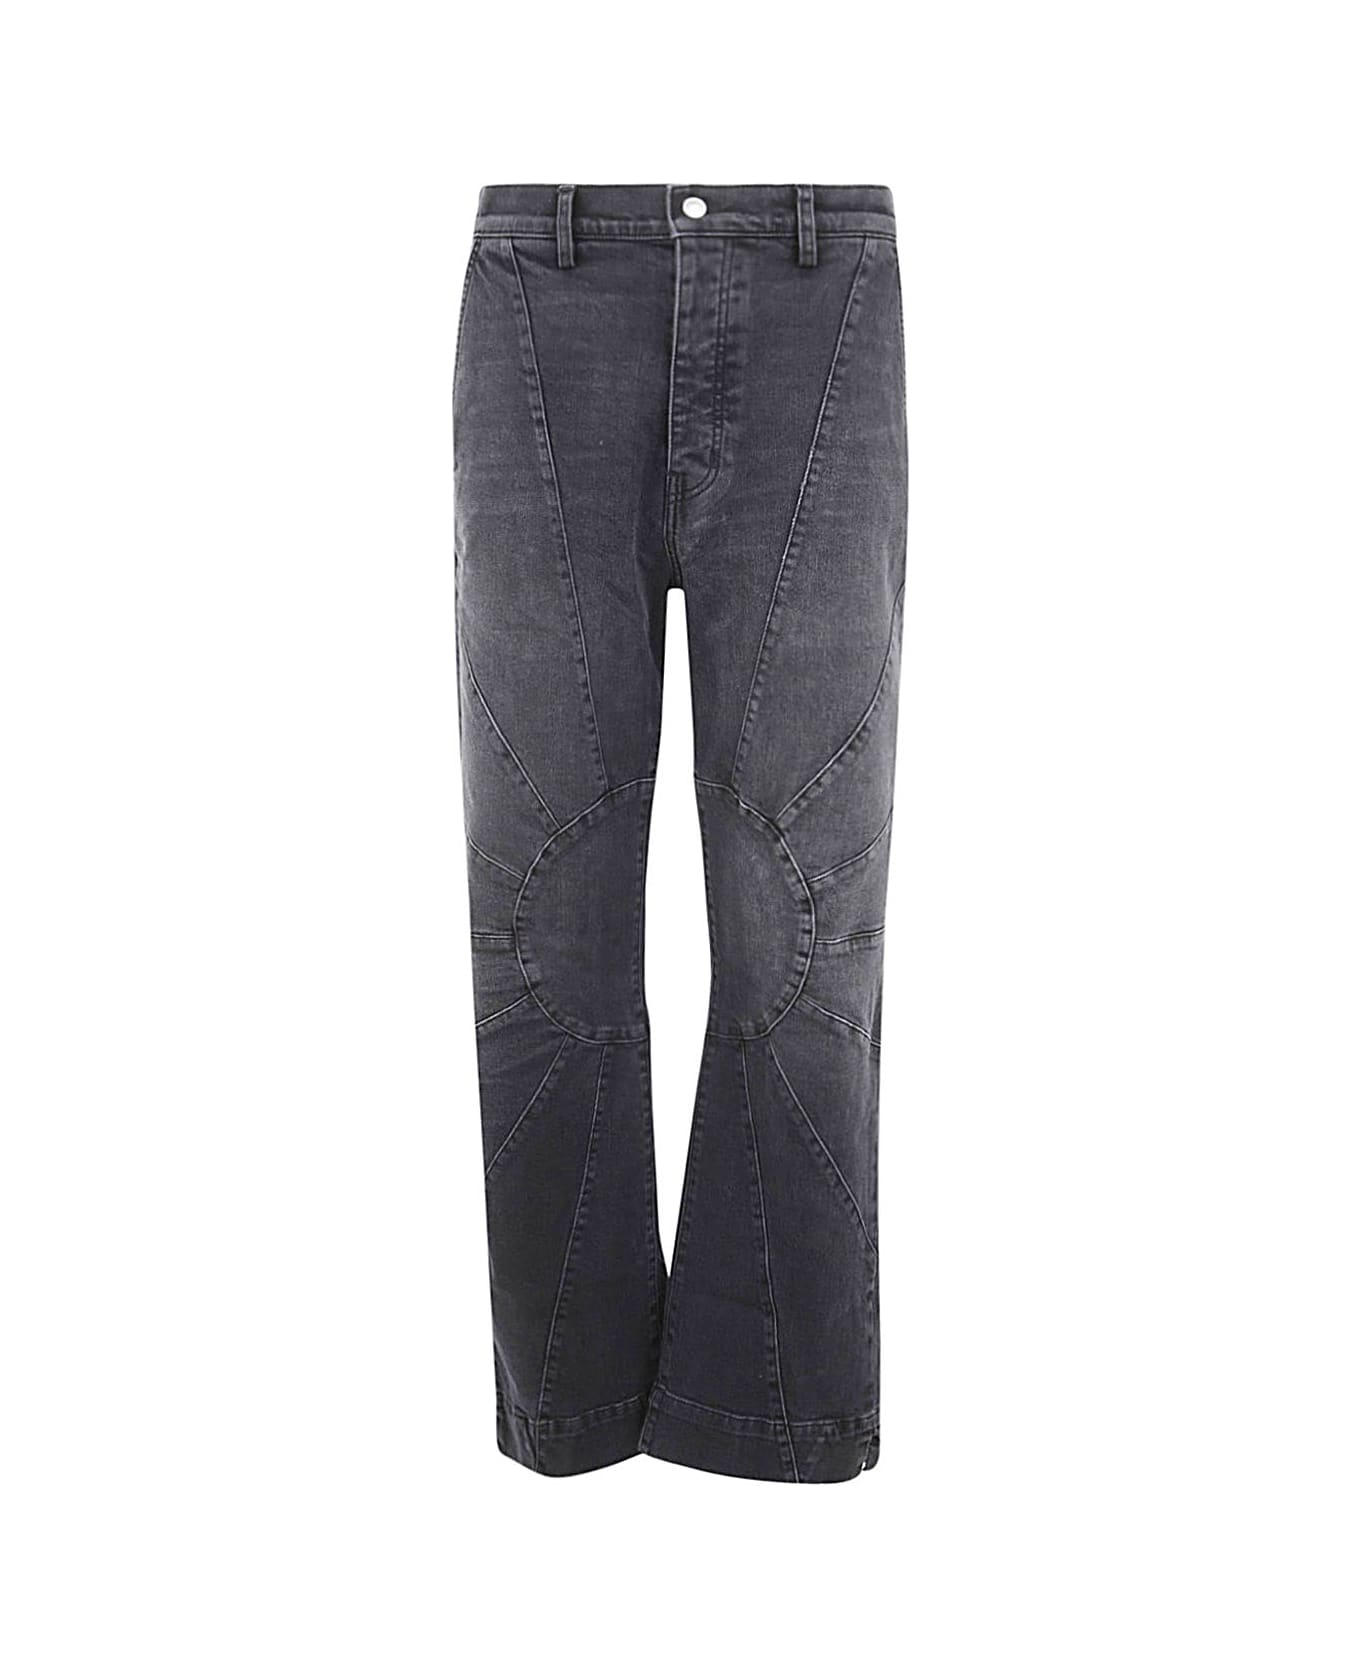 Nahmias Denim Sunshine Jeans - Charcoal Wash